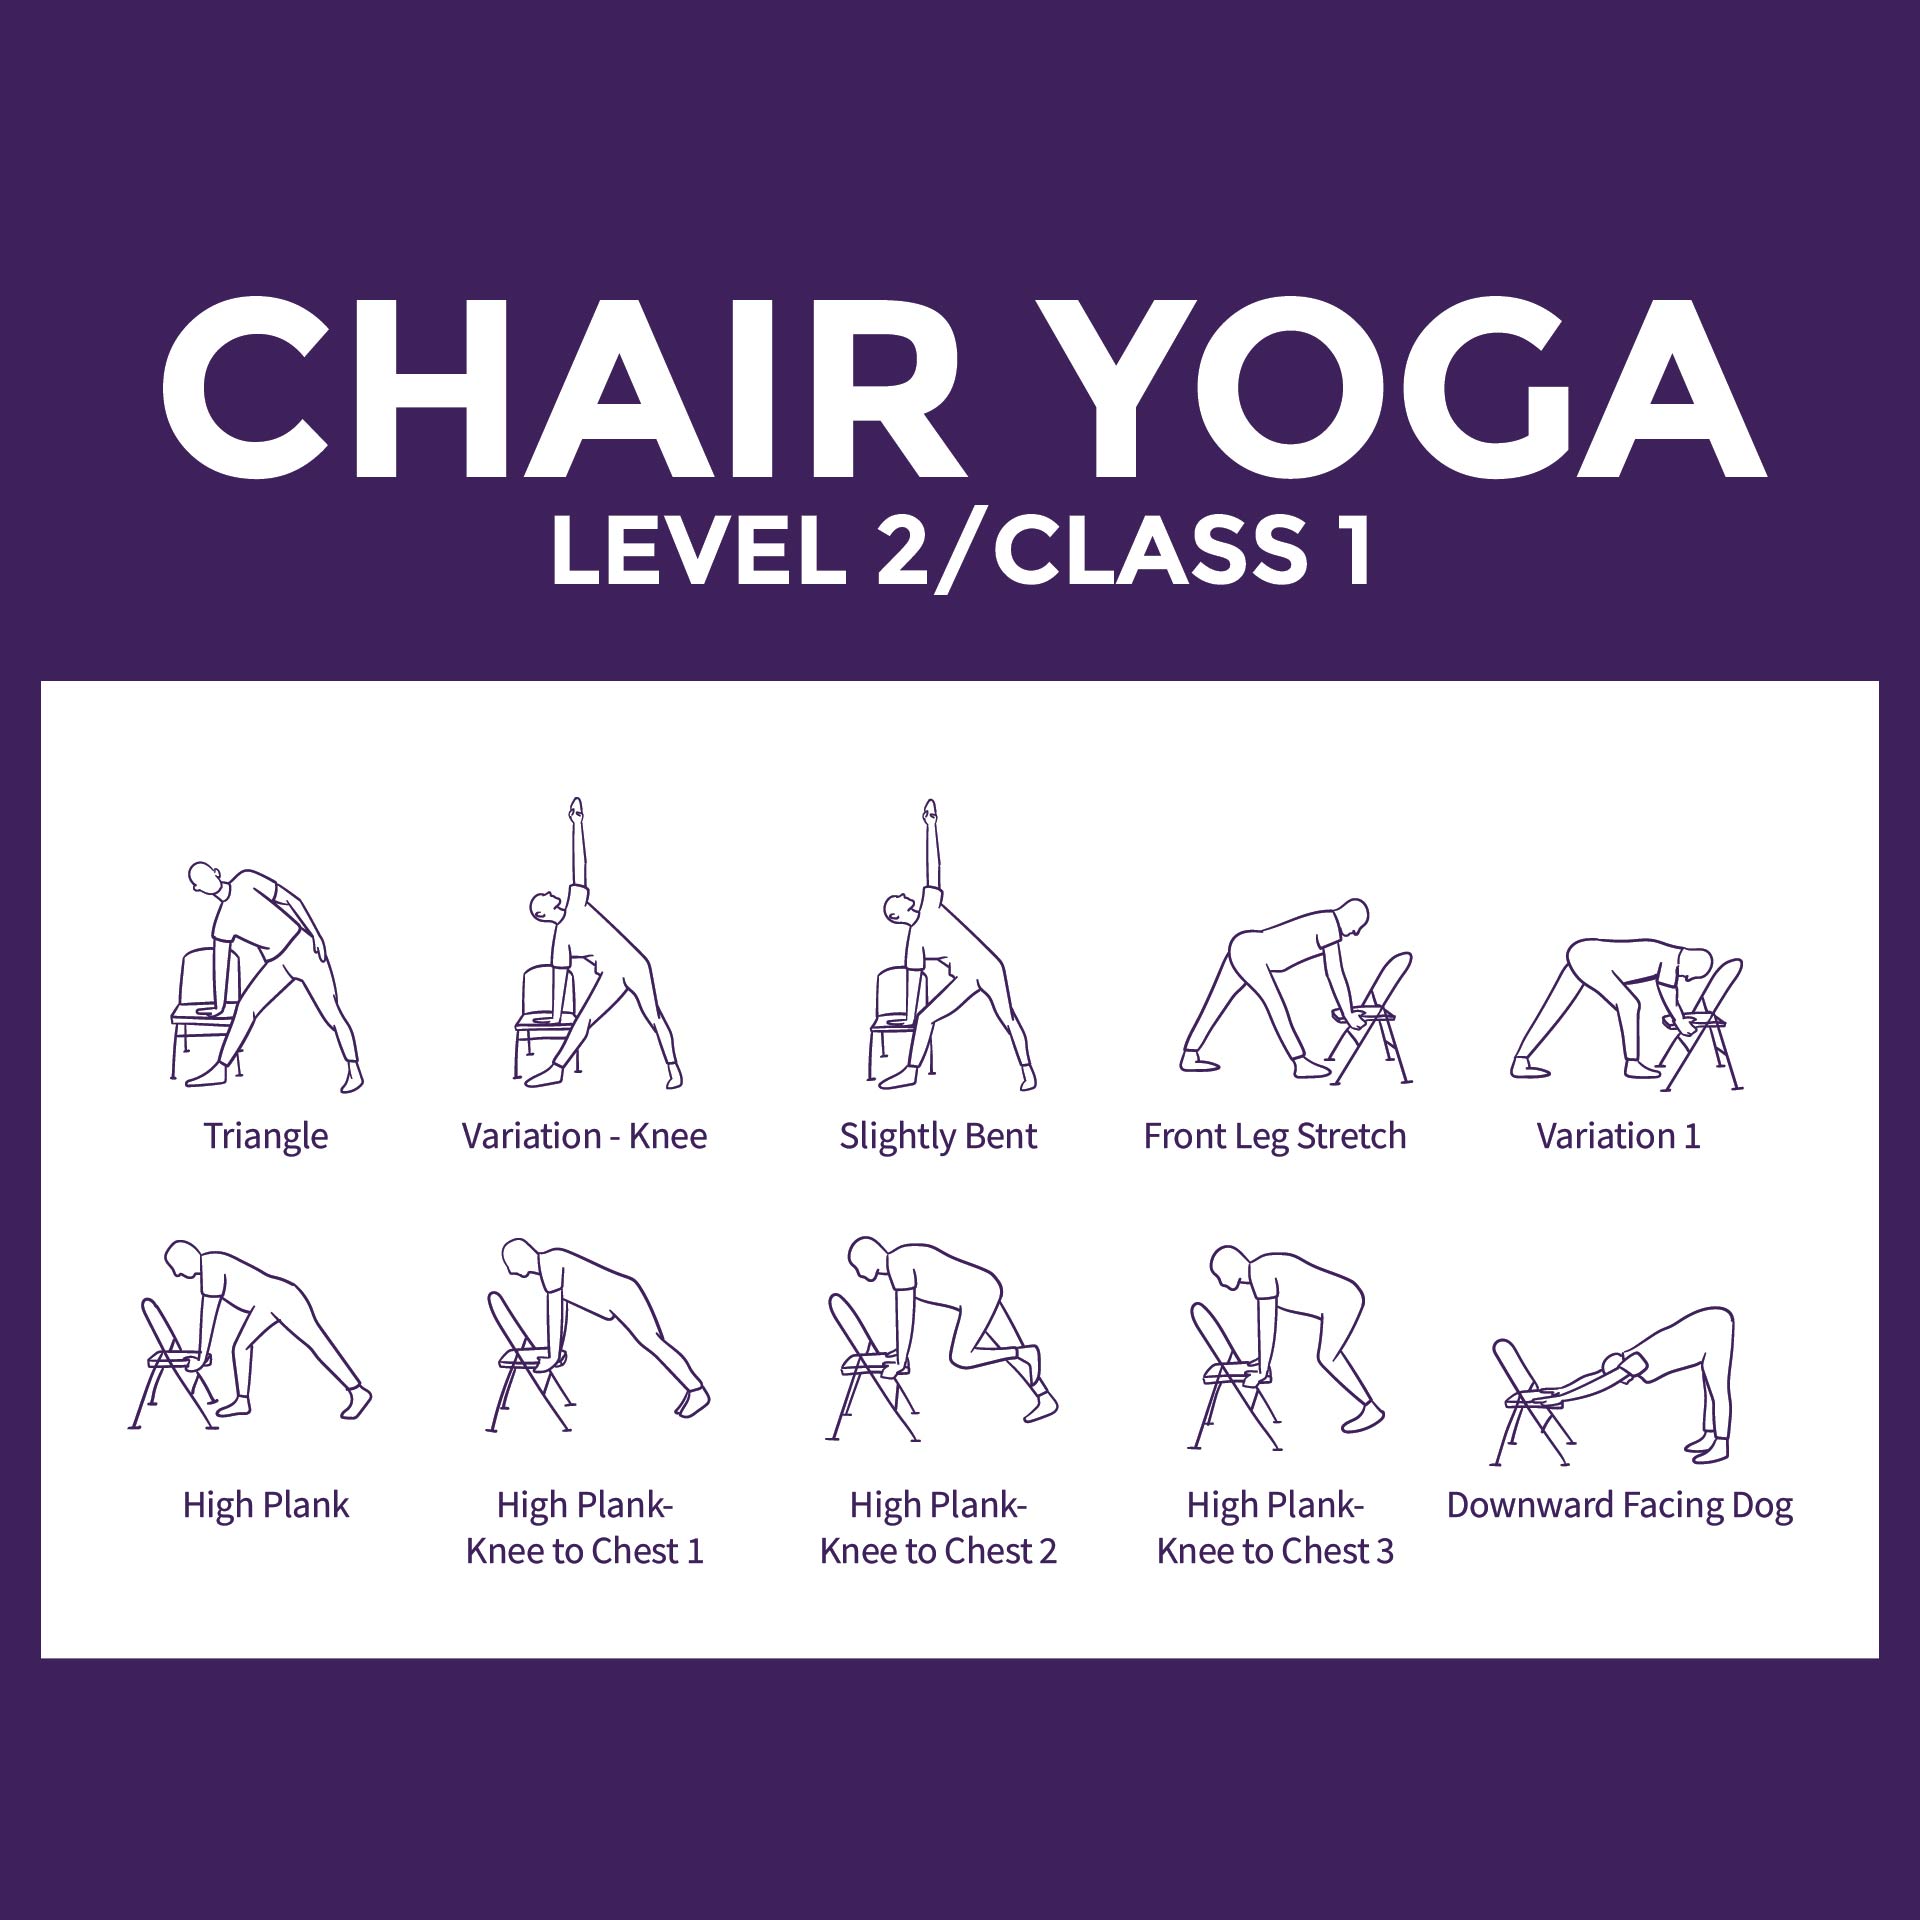 Senior citizen chair yoga for seniors printable